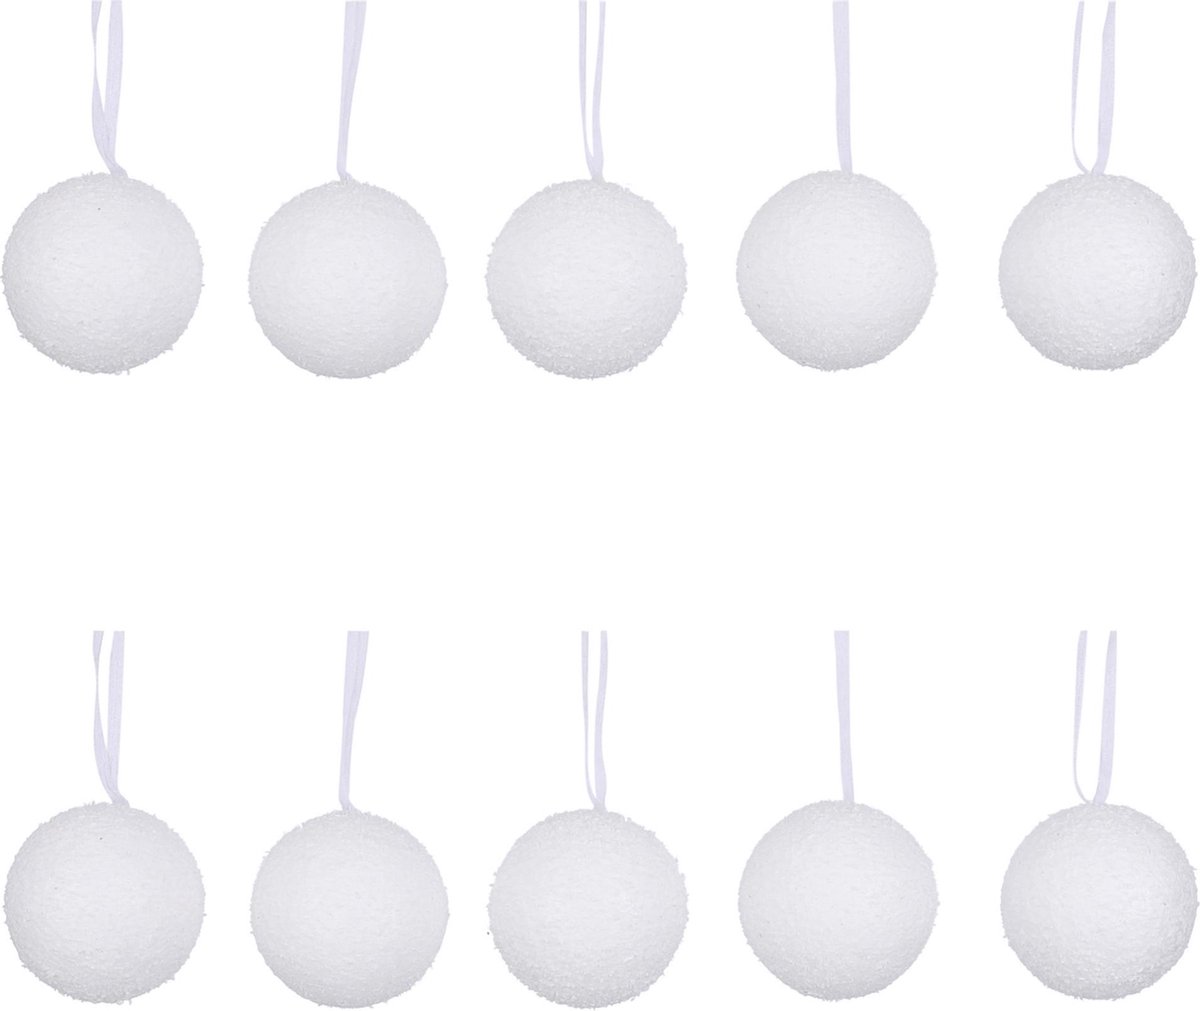 20x Witte sneeuw kerstballen van foam 6 cm - Kerstboomversiering/kerstversiering - Kerstballen/sneeuwballen wit